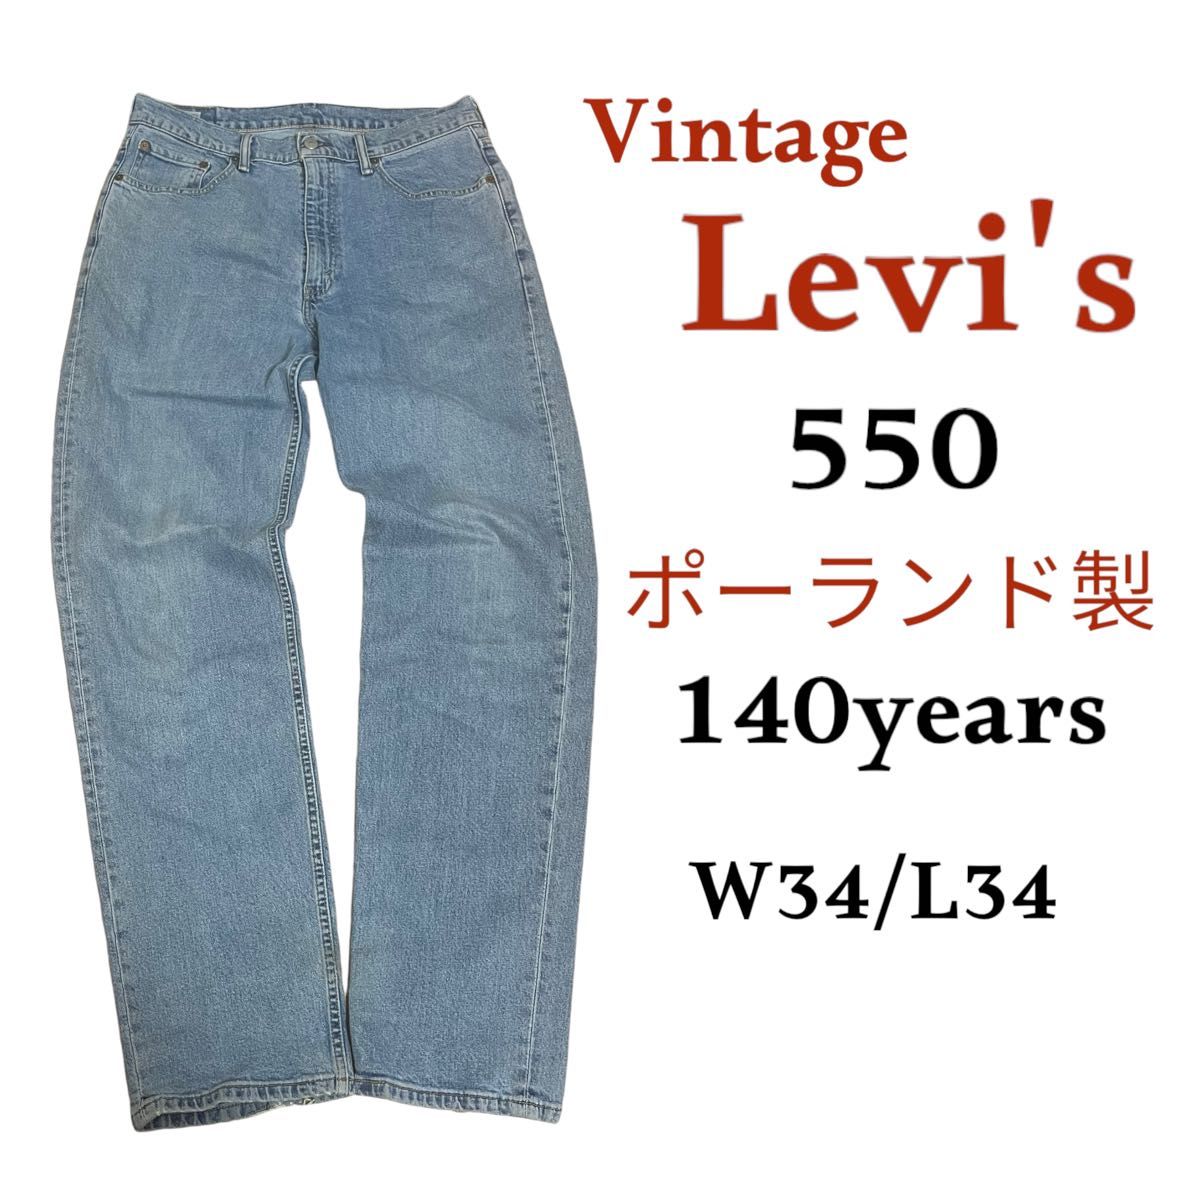 【レア物】140周年 Levi's 550 made in Poland